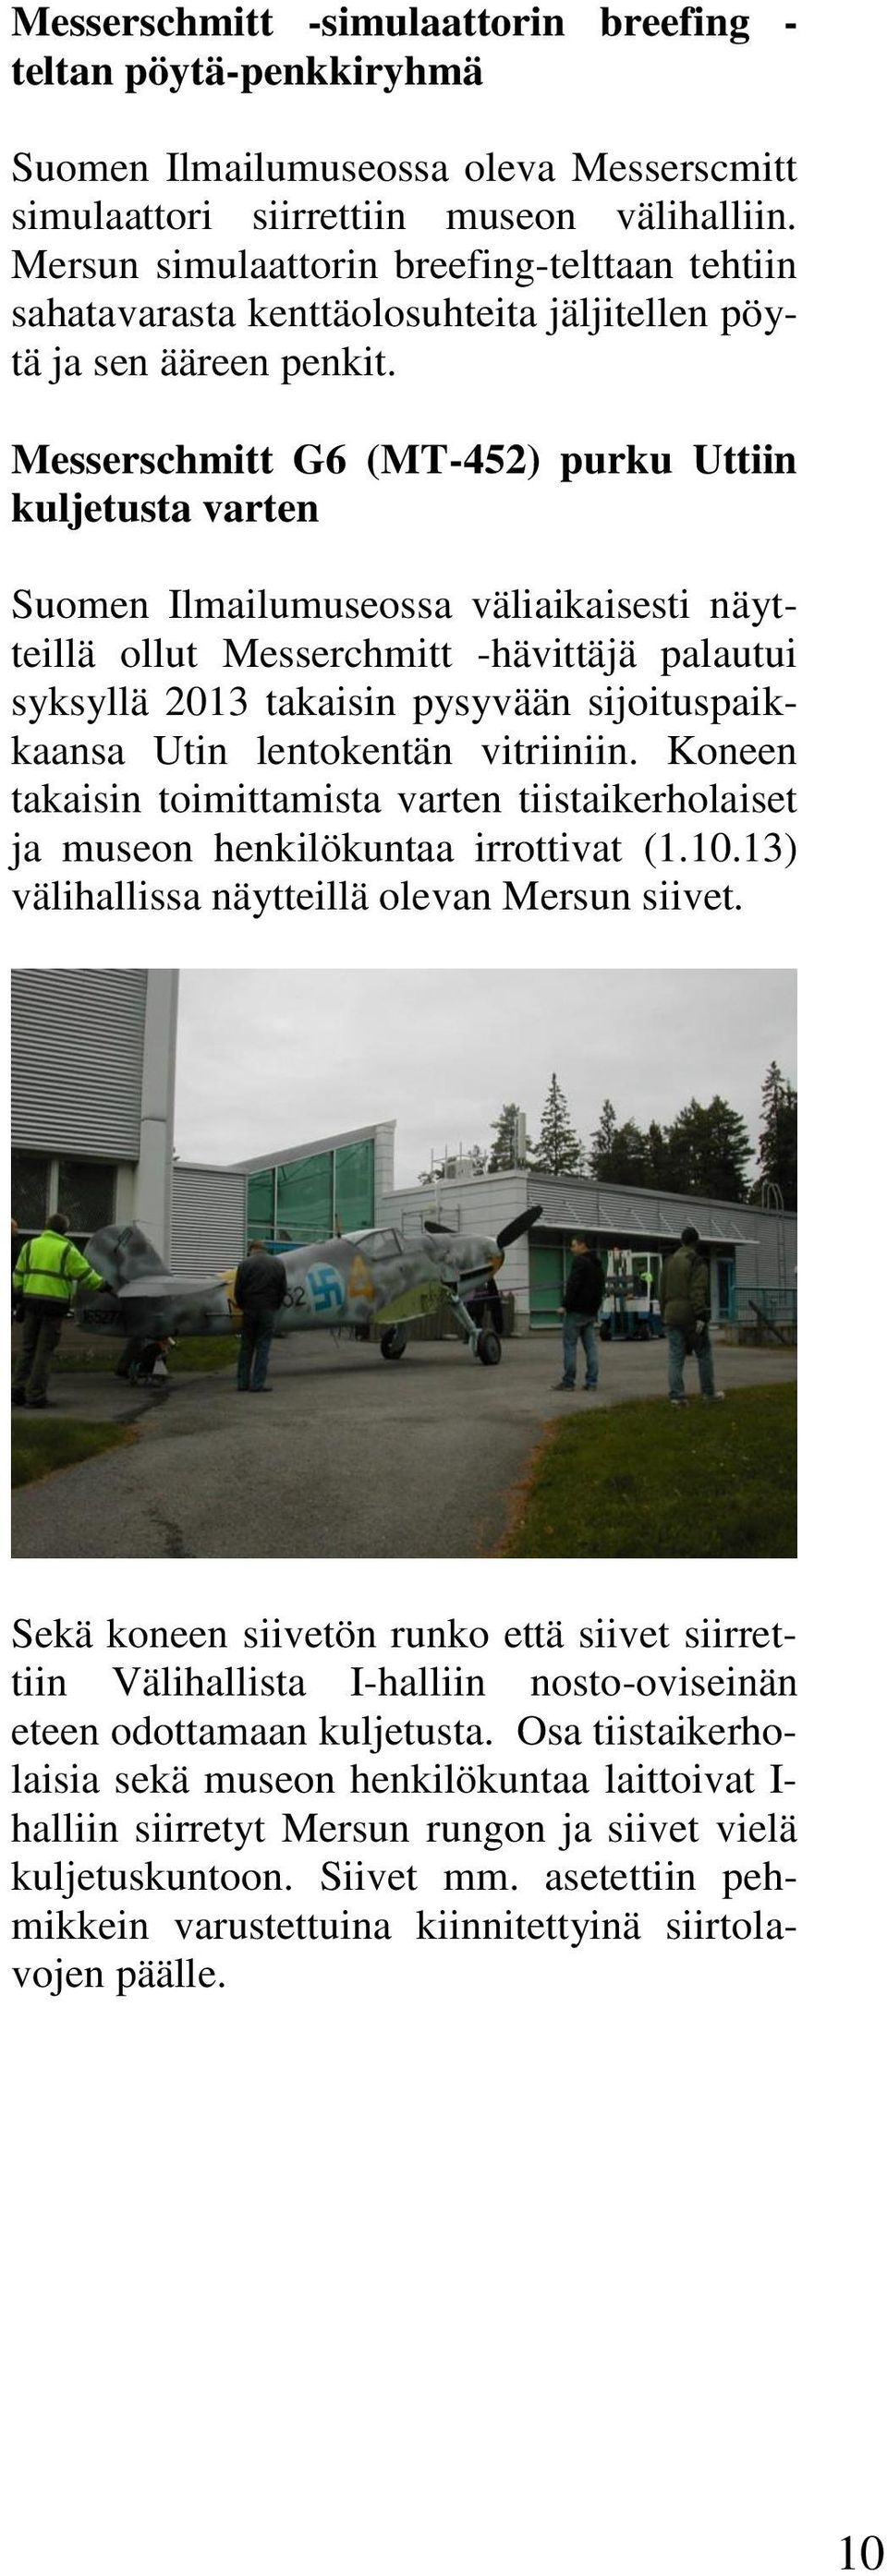 Messerschmitt G6 (MT-452) purku Uttiin kuljetusta varten Suomen Ilmailumuseossa väliaikaisesti näytteillä ollut Messerchmitt -hävittäjä palautui syksyllä 2013 takaisin pysyvään sijoituspaikkaansa